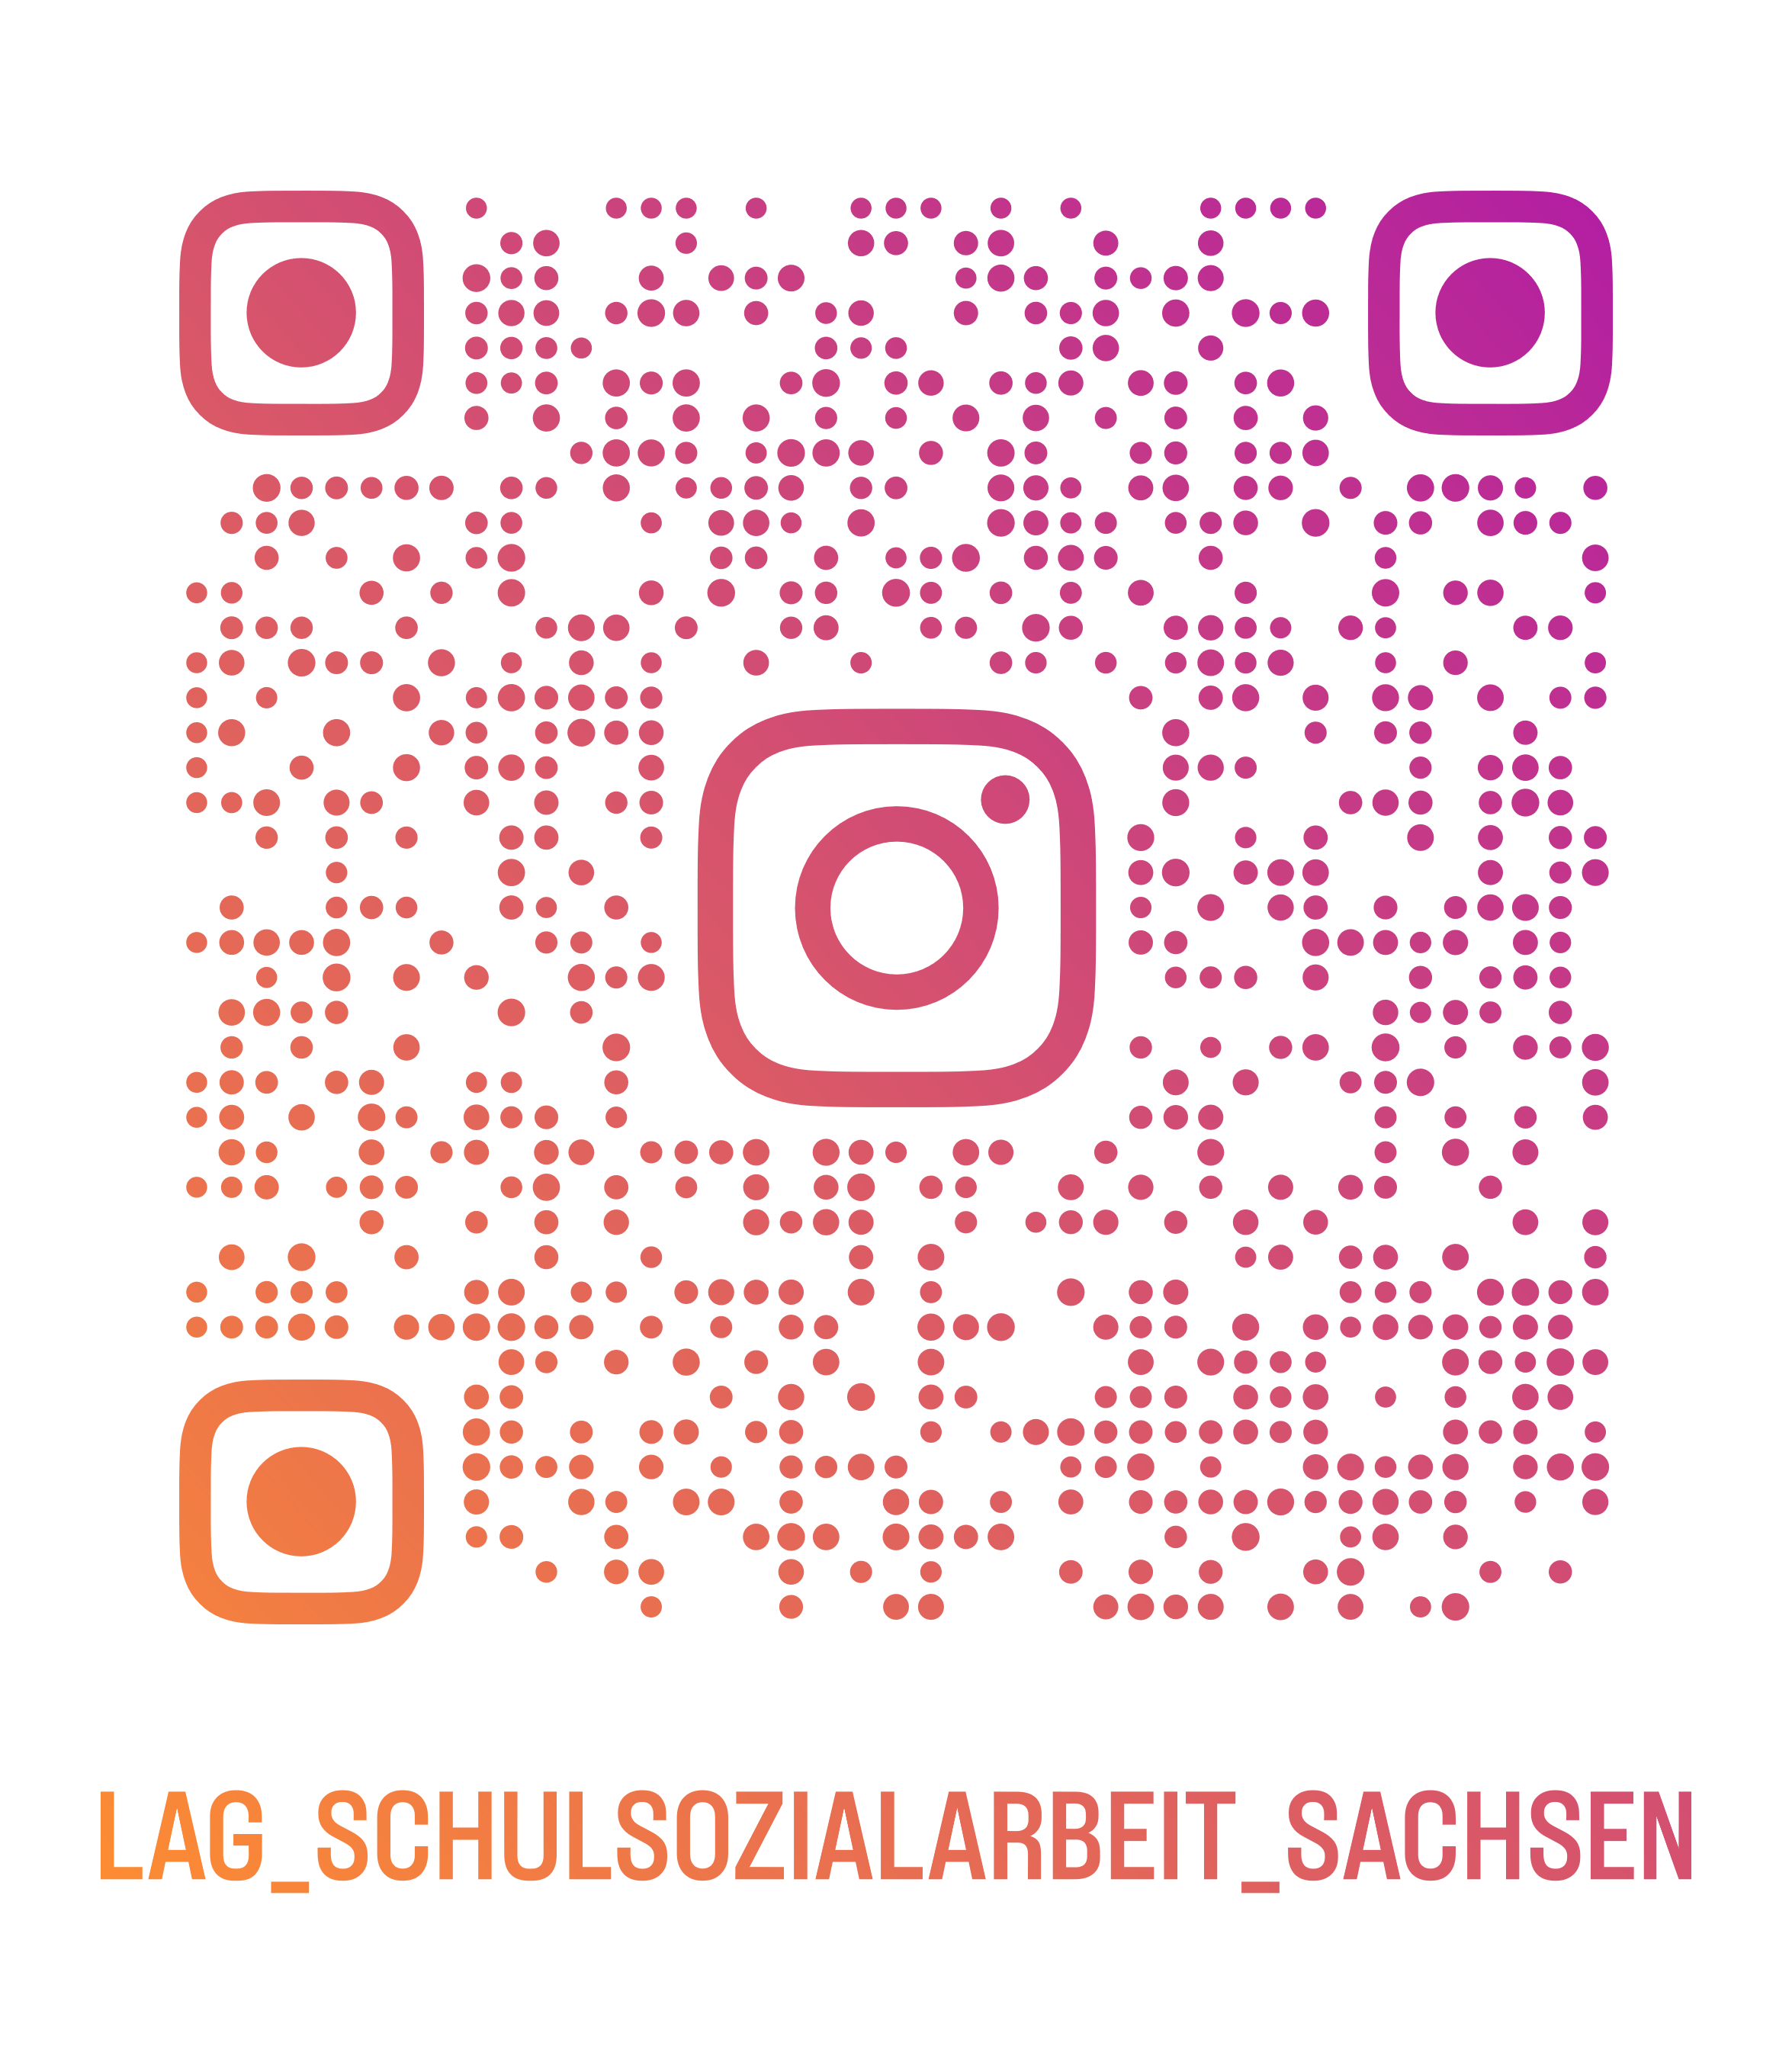 Schulsozialarbeit Sachsen Instagram Profil Follow